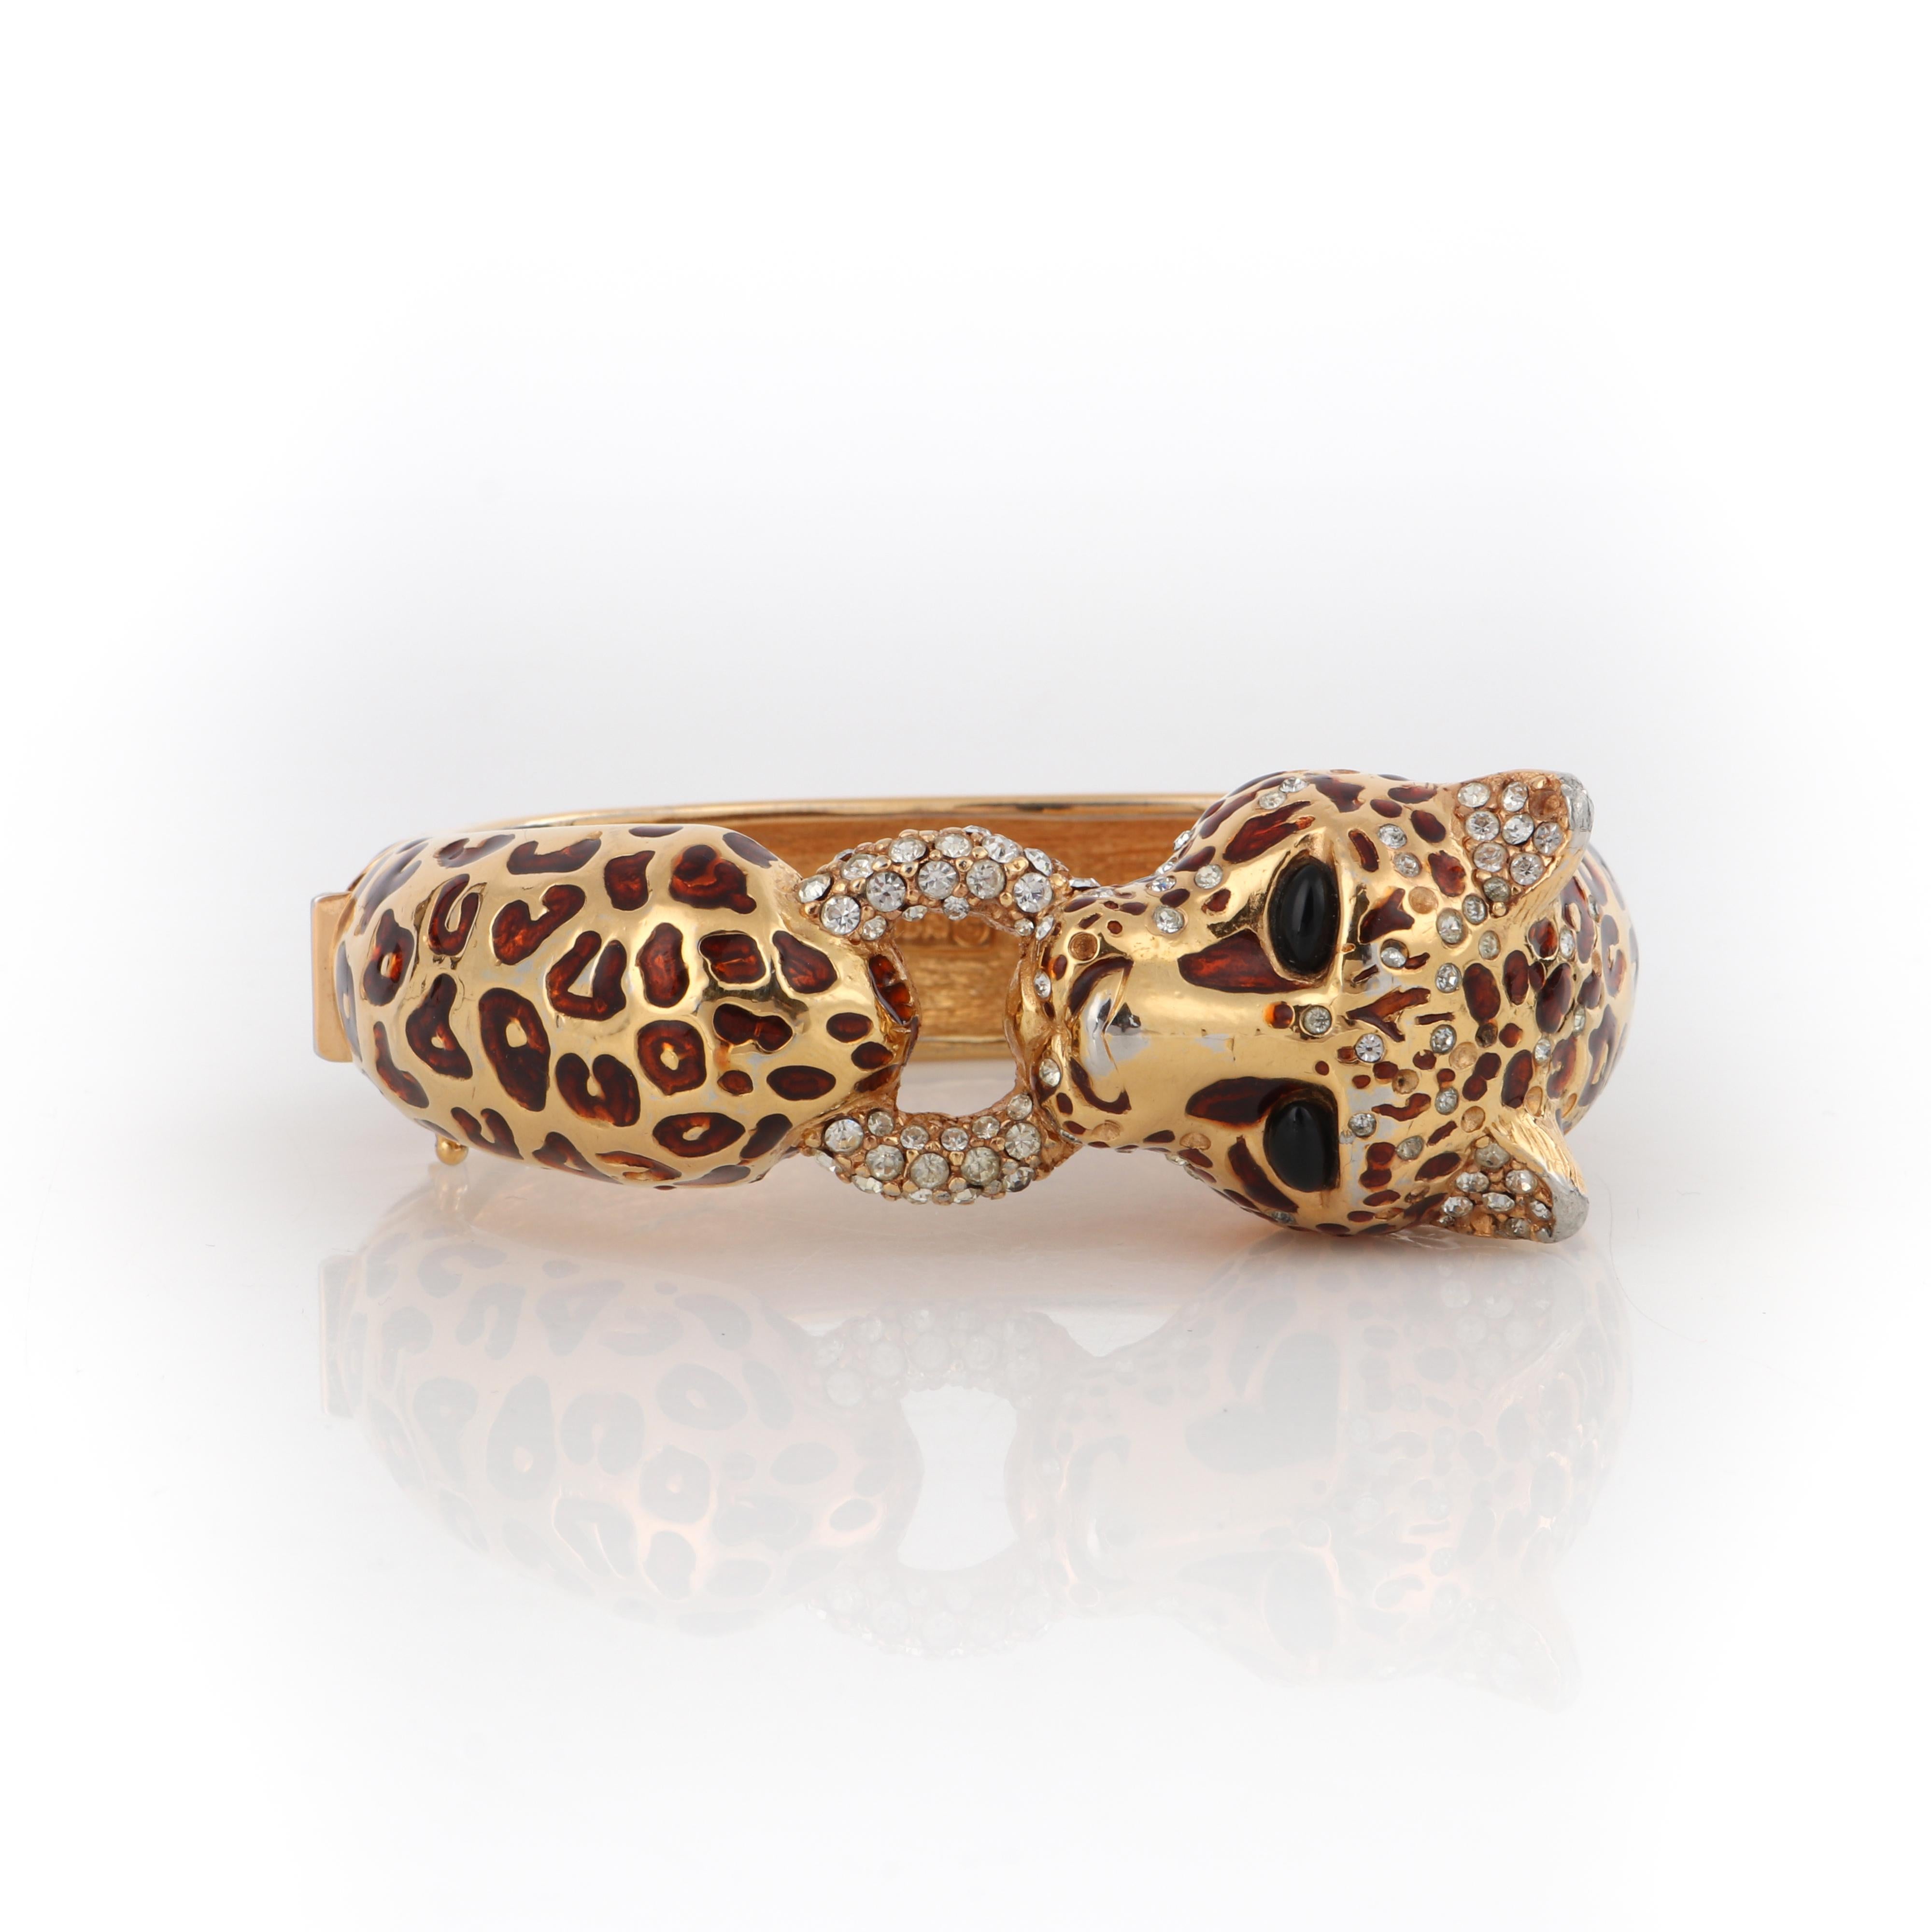 CINER c.1970s Gold Copper Enamel Swarovski Crystal Leopard Hinge Bangle Bracelet 1